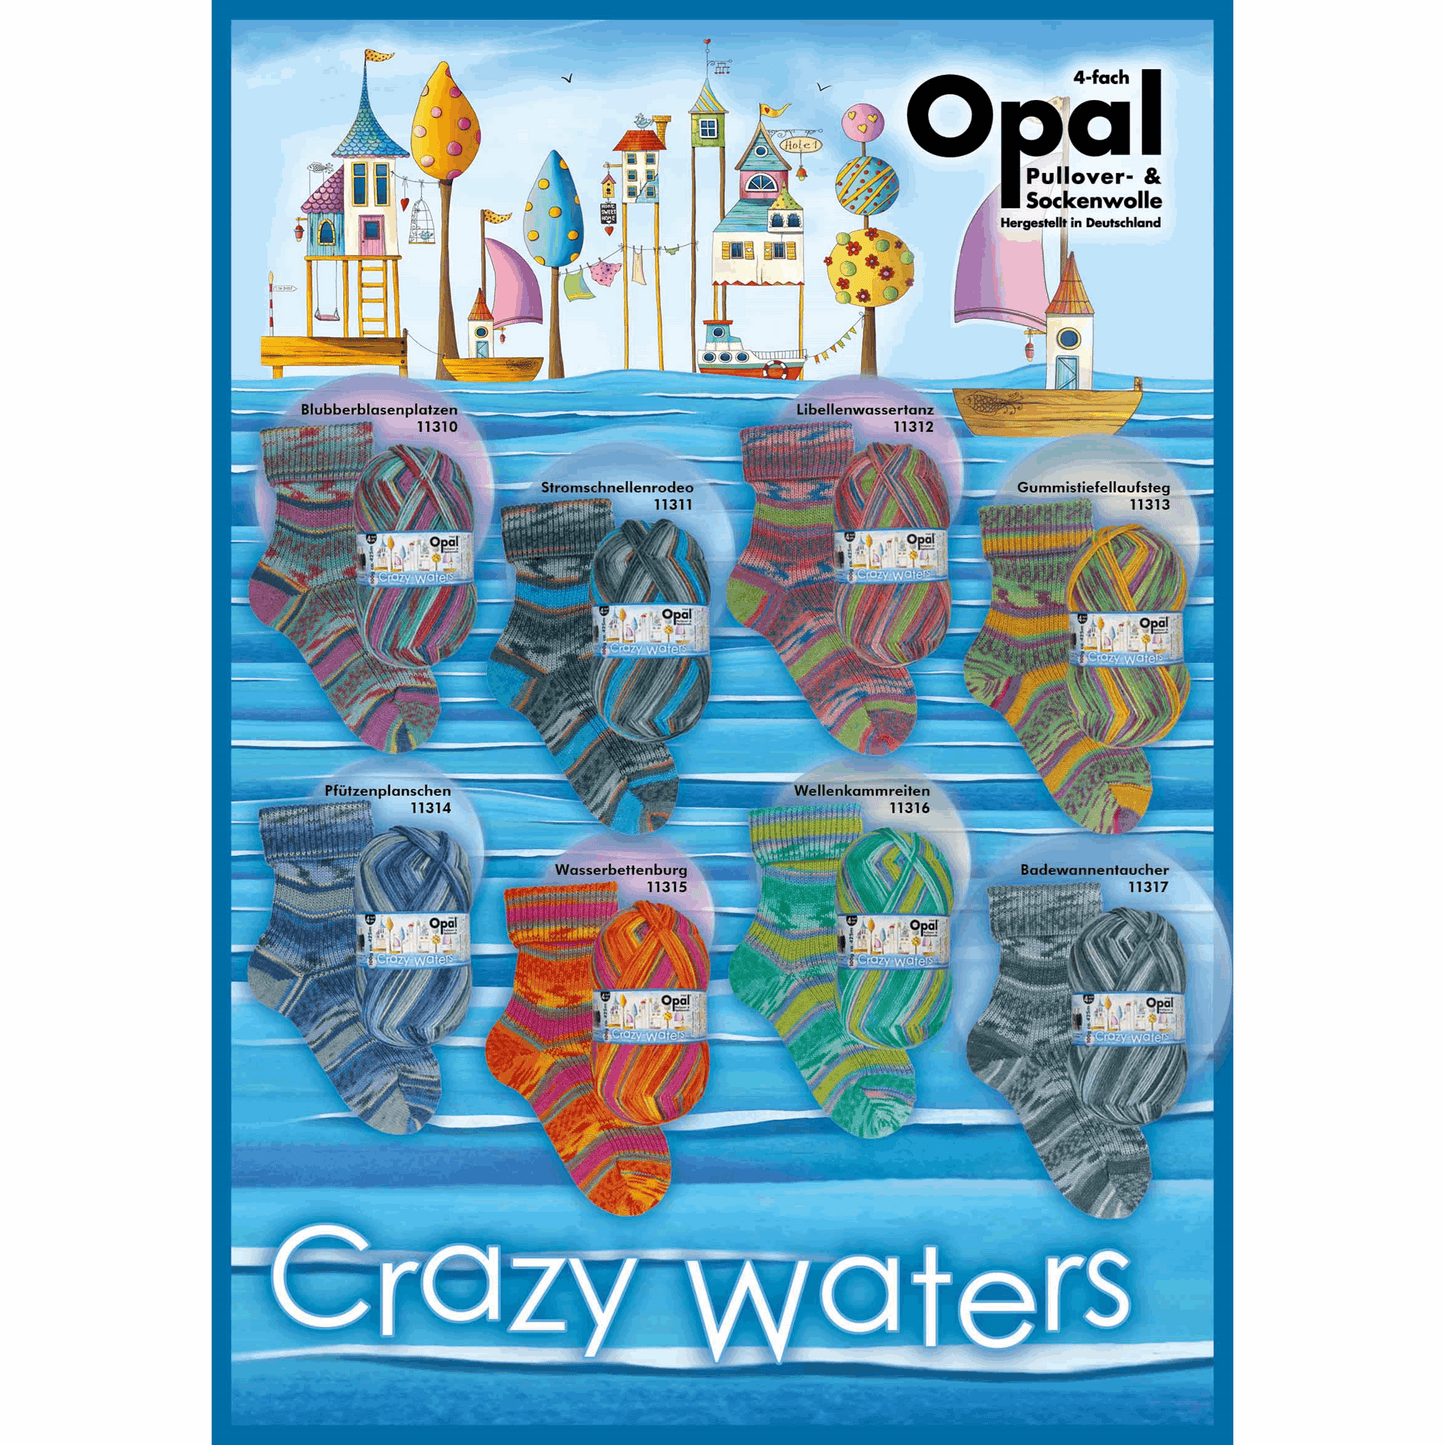 Opal Grazy Waters 4fädig 100g, 97755, Farbe badewannentaucher 1317